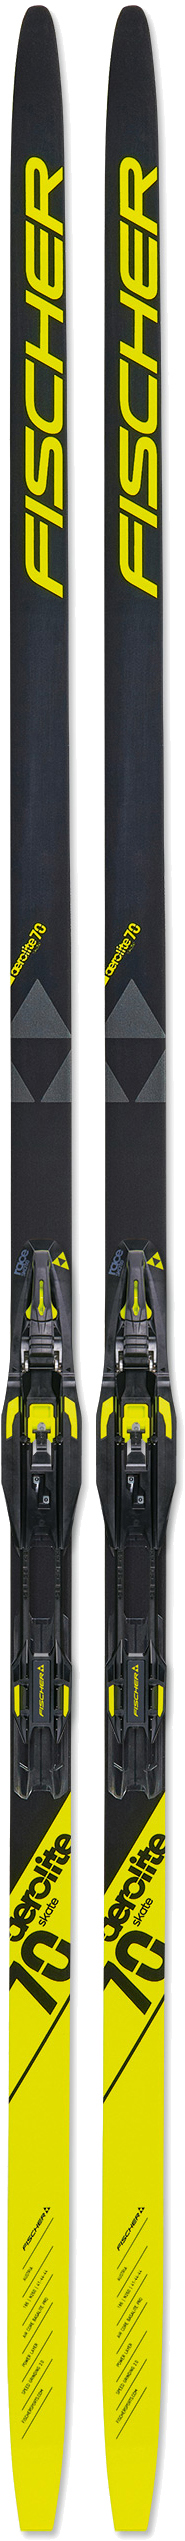 Лыжи для конькового хода Fischer Aerolite-Skate-70 186 см